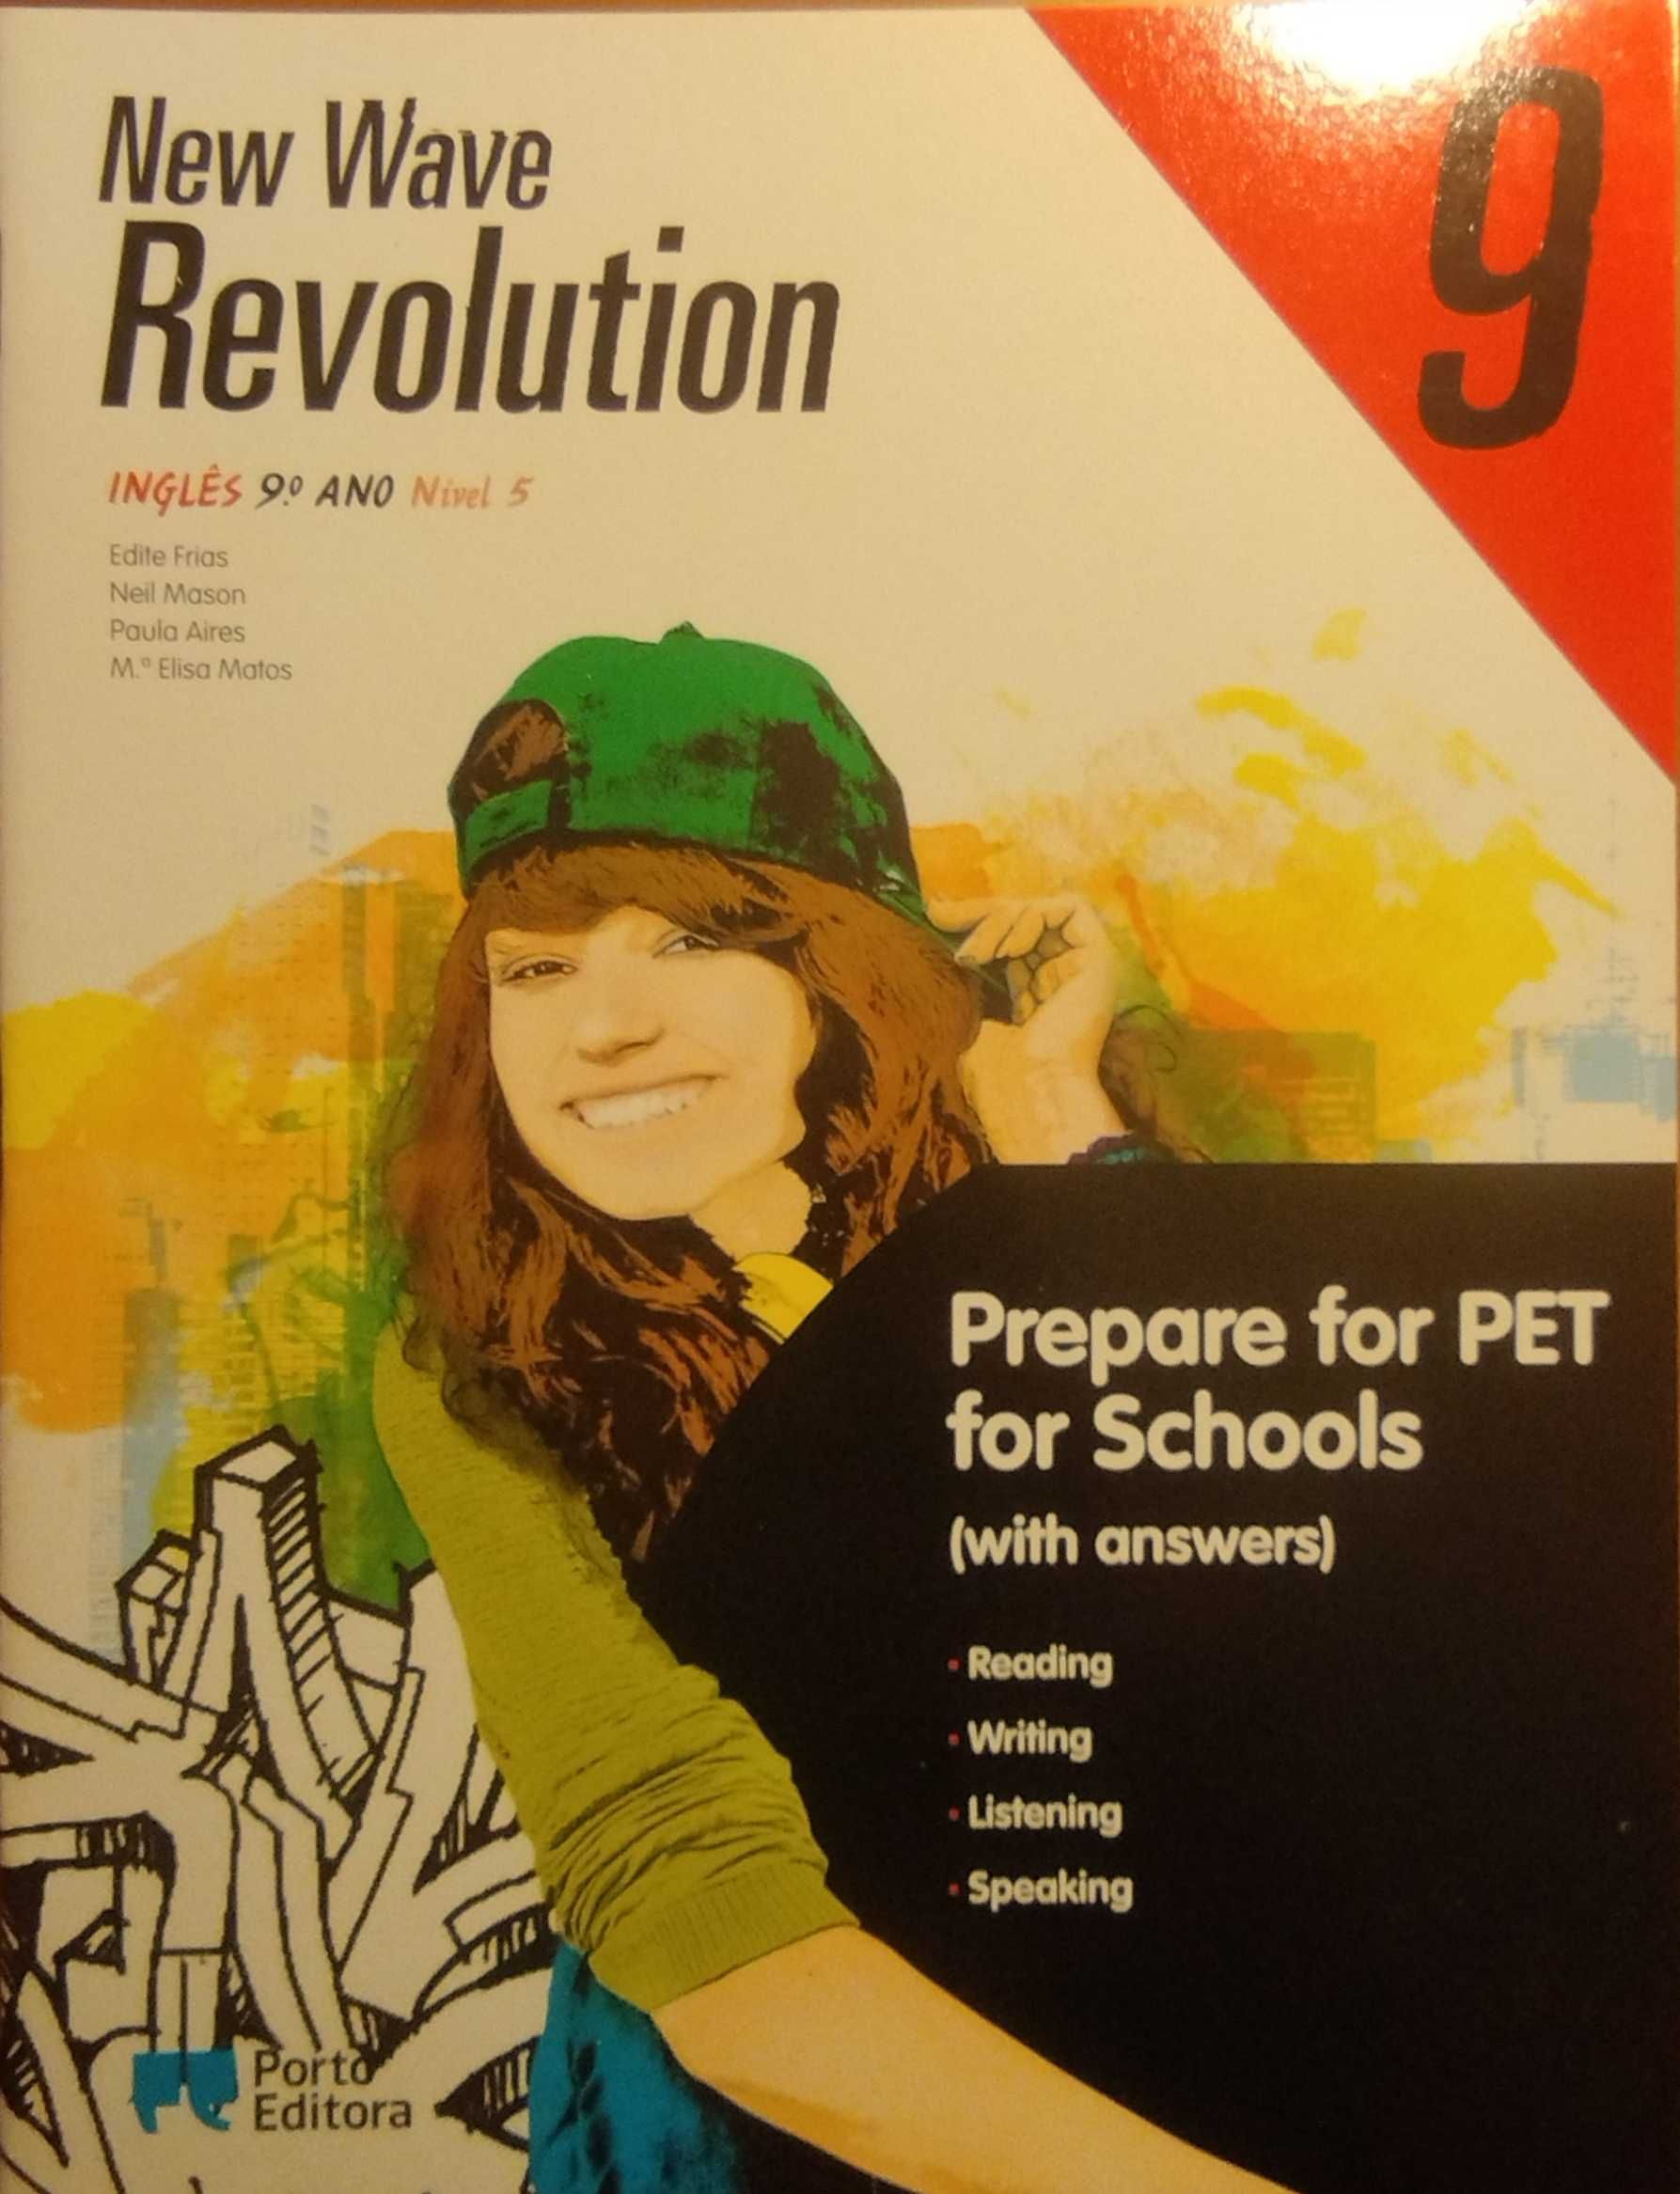 New Wave Revolution 9 Workbook